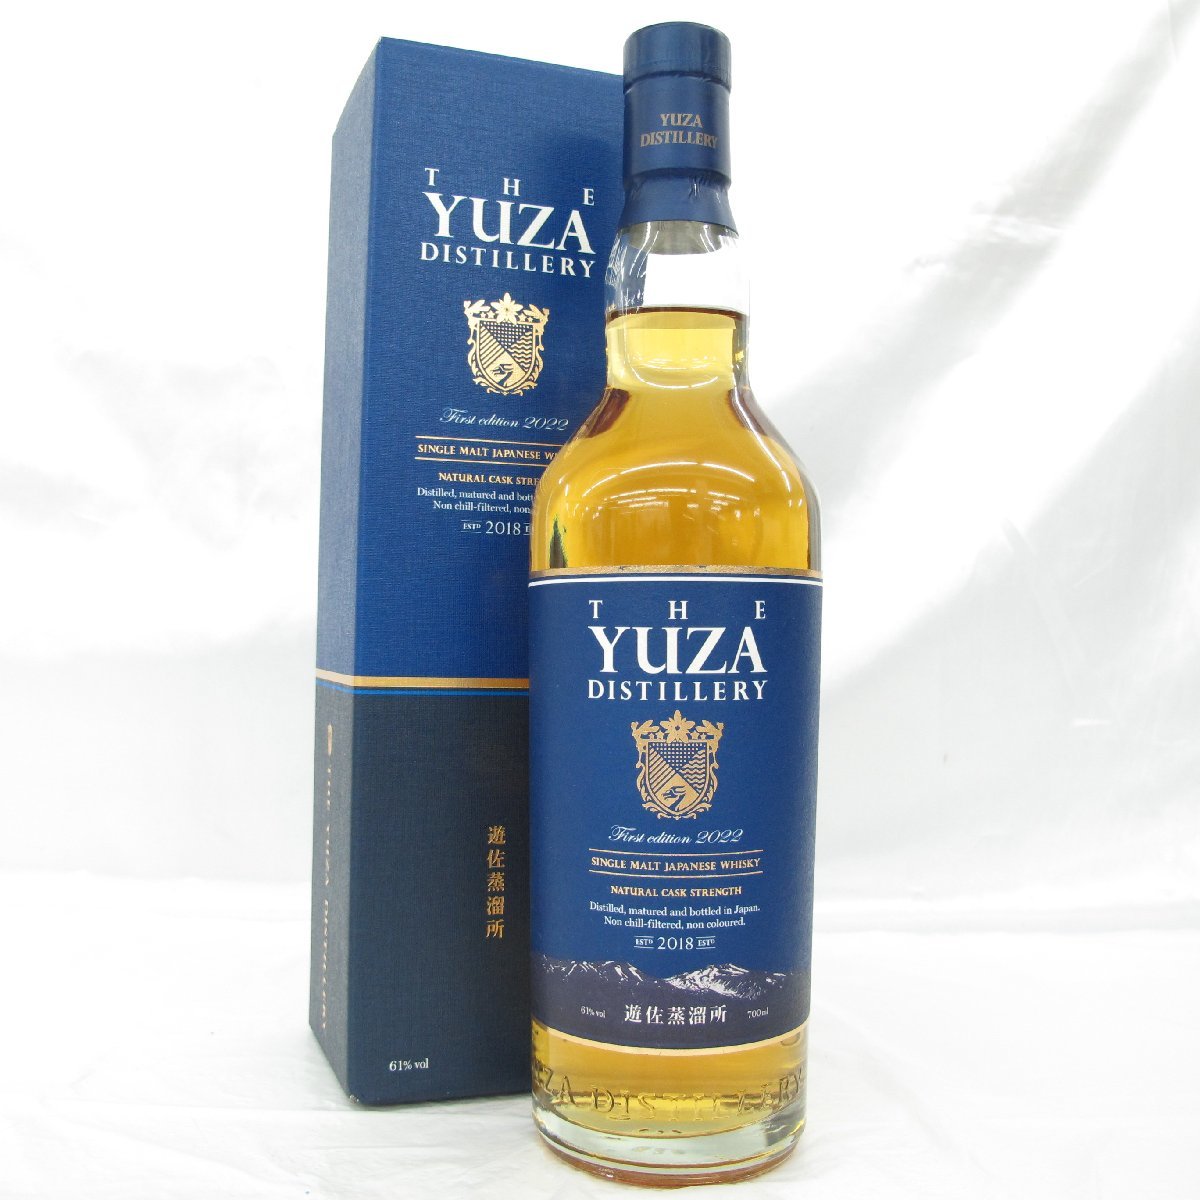 遊佐蒸溜所 YUZA ファースト エディション 2022 シングルモルト ウイスキー 700ml 61% 箱付